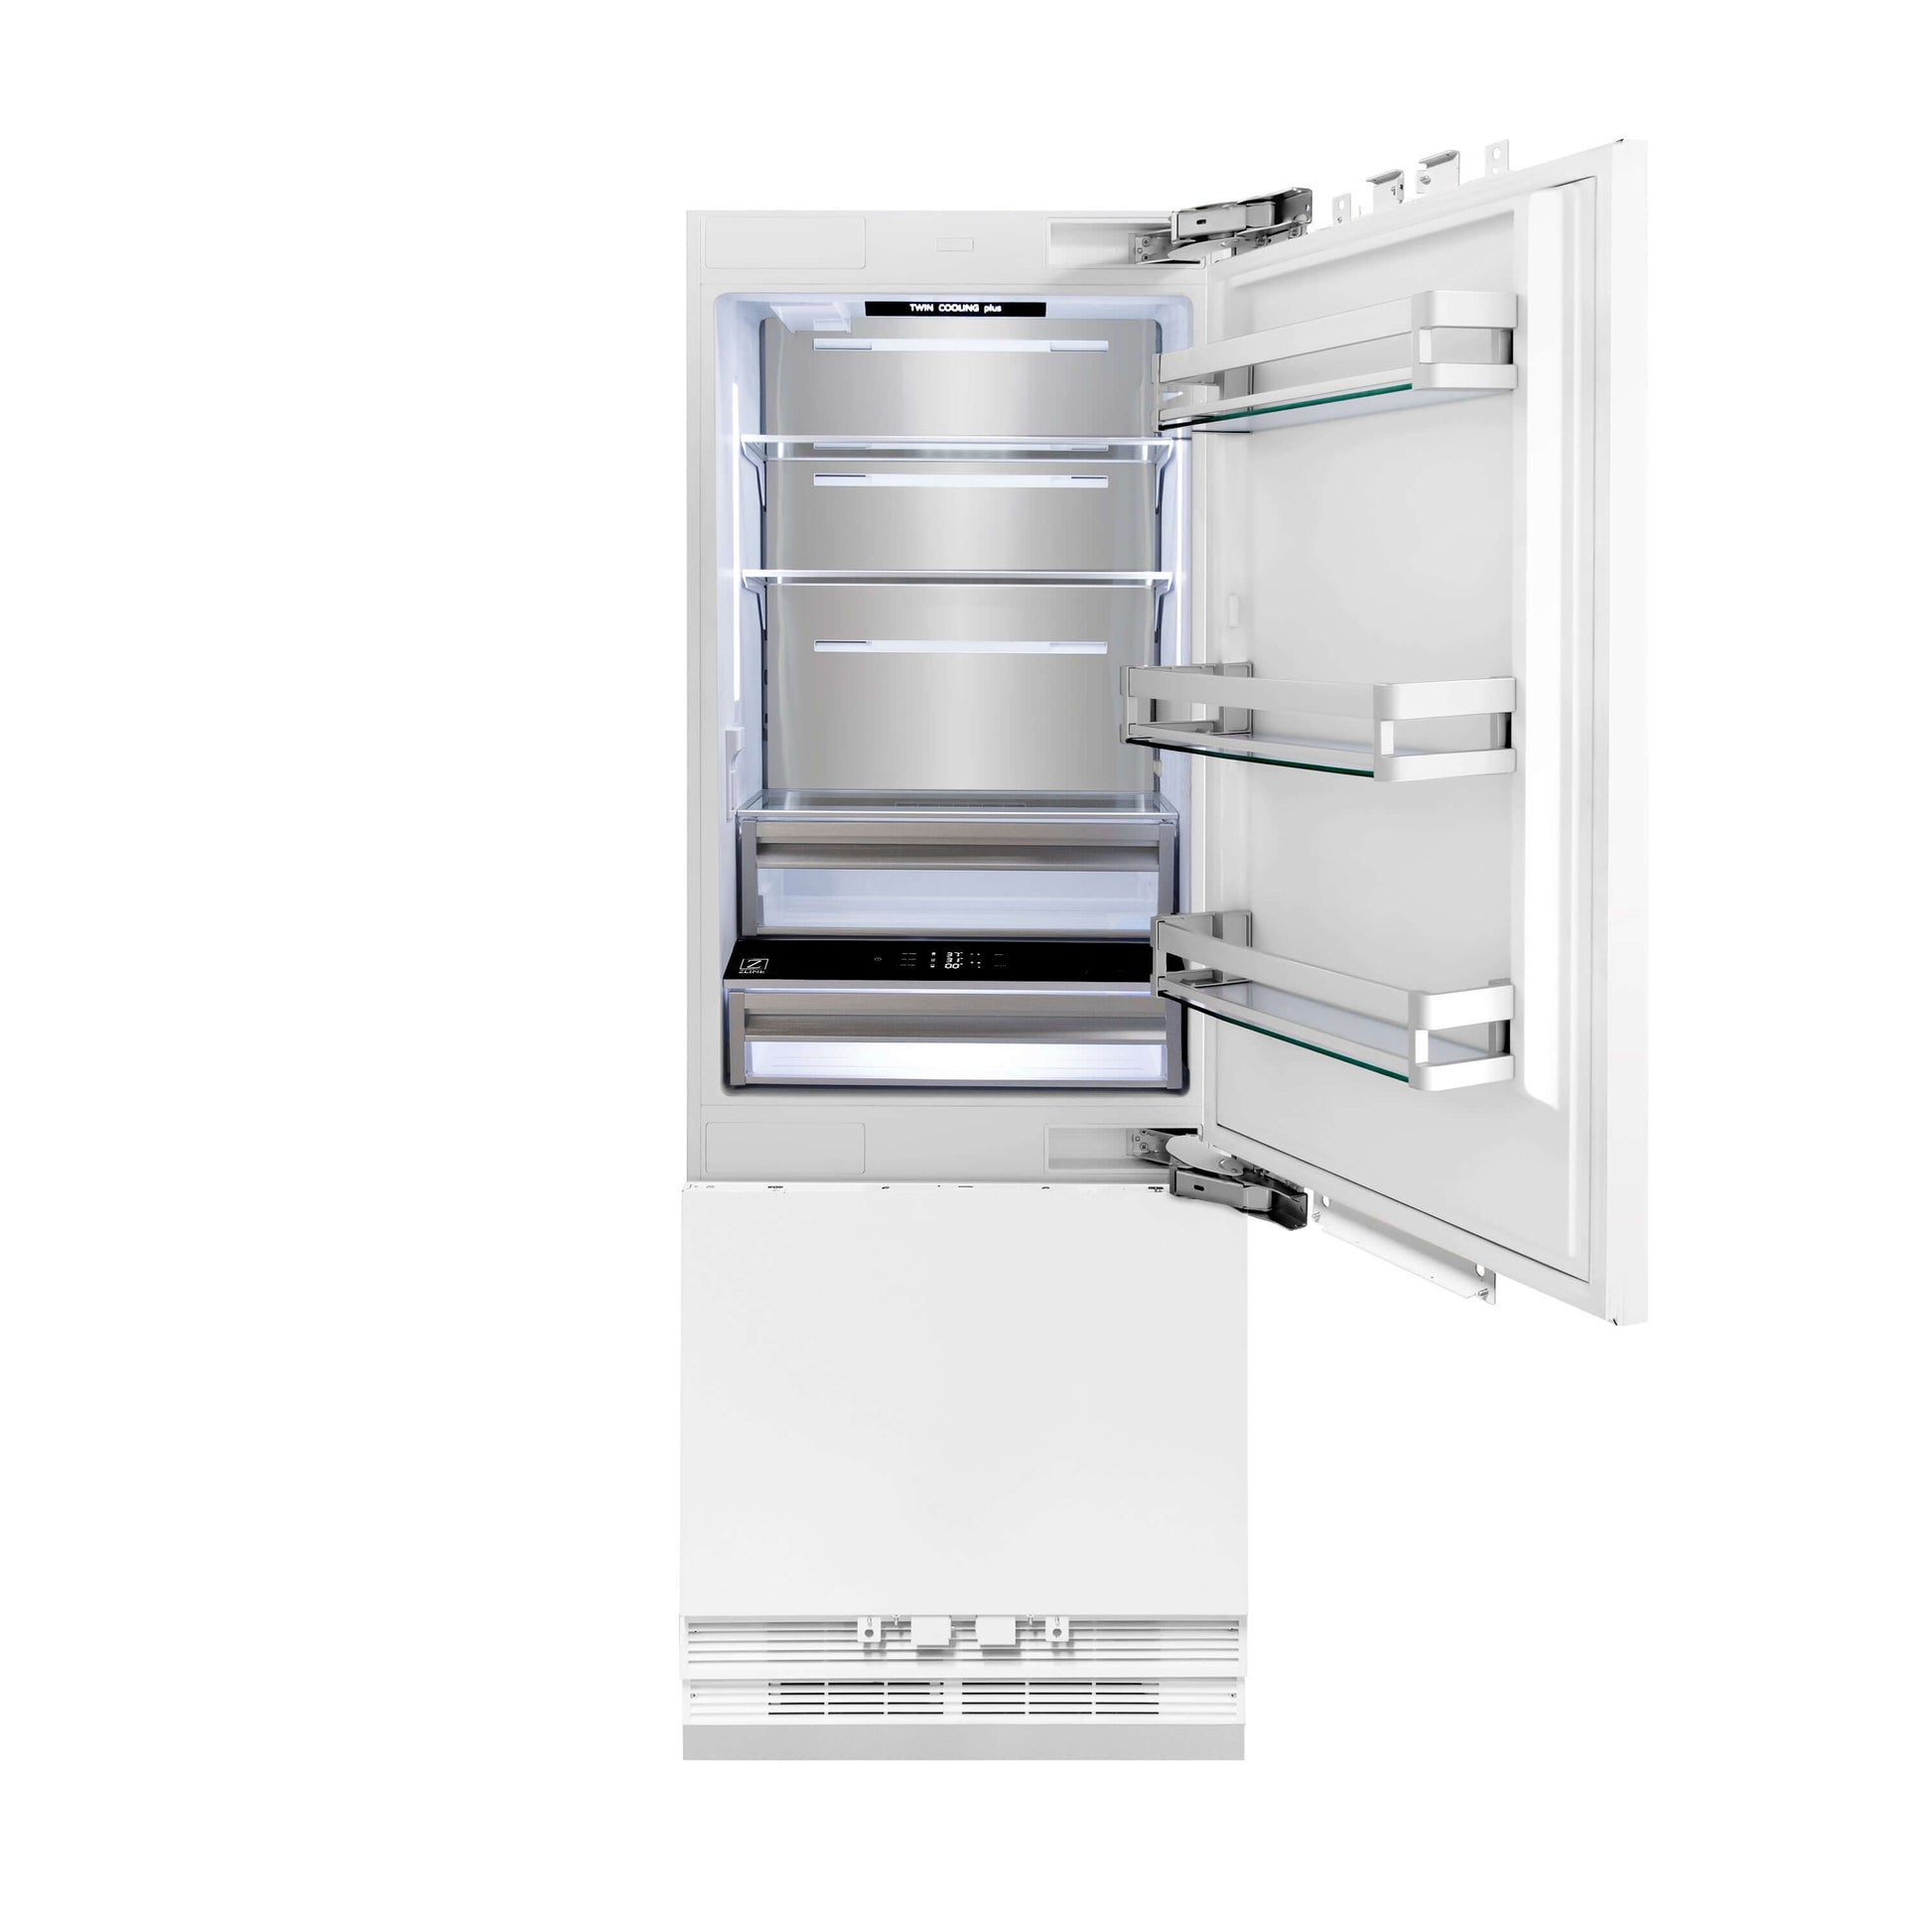 ZLINE 30 in. 16.1 cu. ft. Panel Ready Built-In 2-Door Bottom Freezer Refrigerator with Internal Water and Ice Dispenser (RBIV-30) front, doors open.